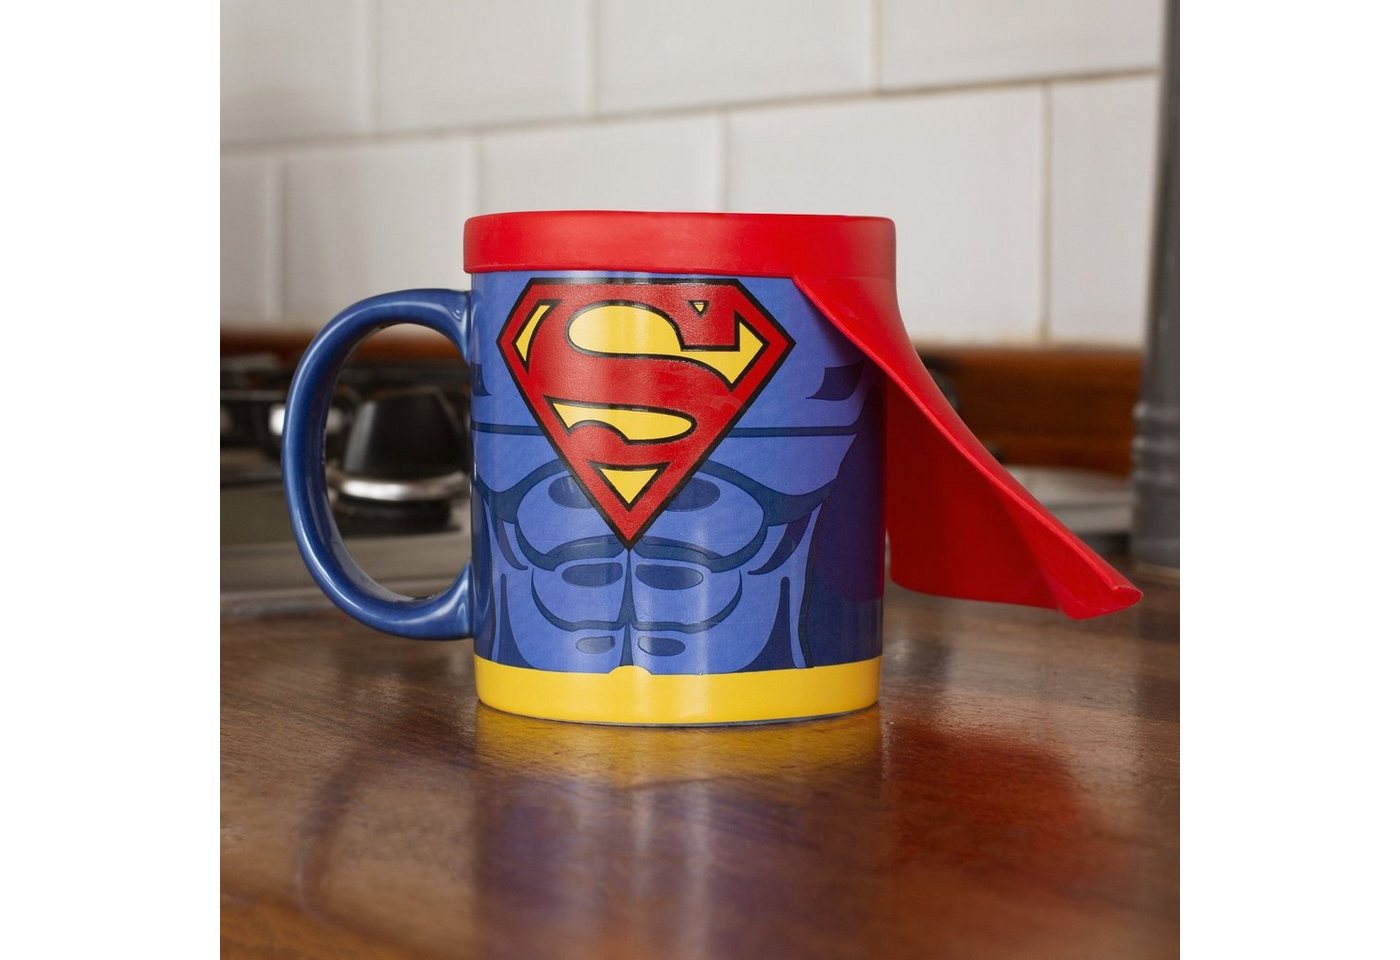 Thumbs Up Tasse Superman Mug with Cape", Keramik, mit Silikoncape" von Thumbs Up